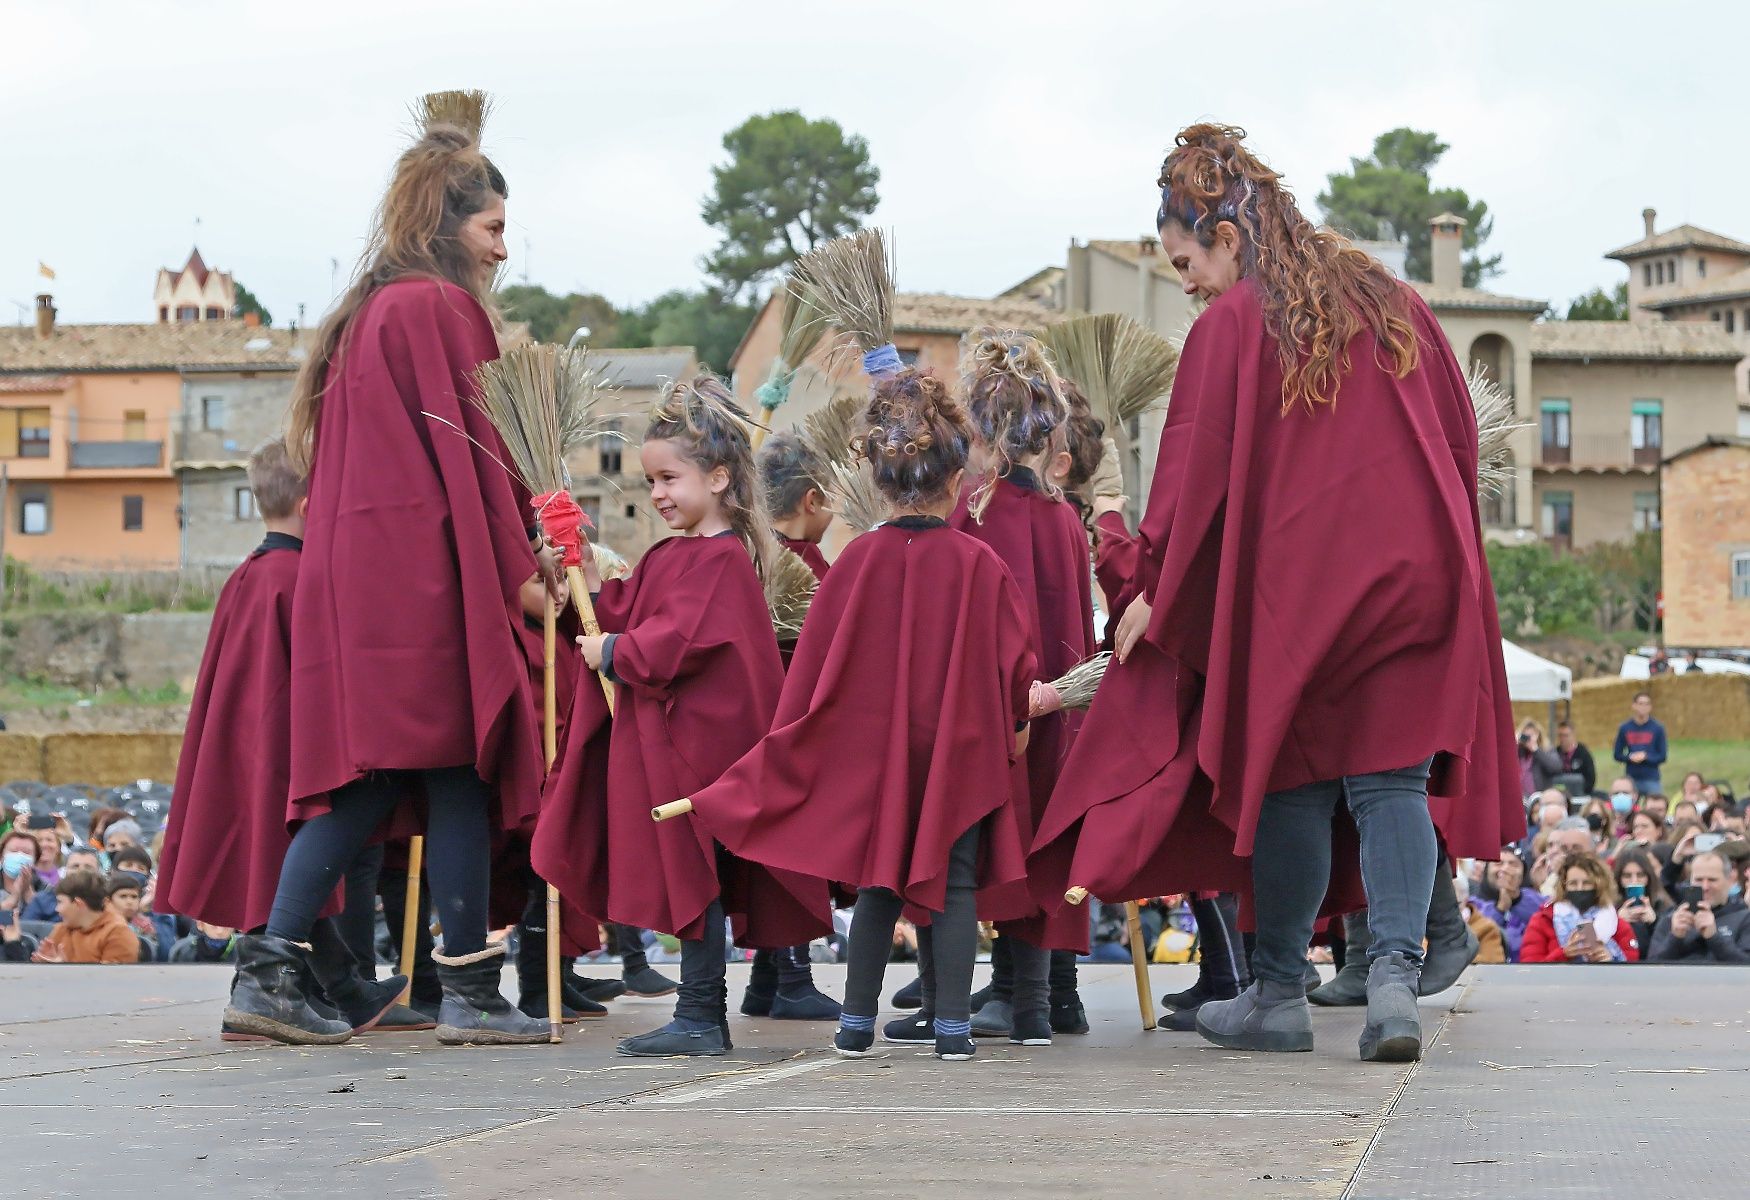 La Fira de les Bruixes de Sant Feliu Sasserra, en fotos